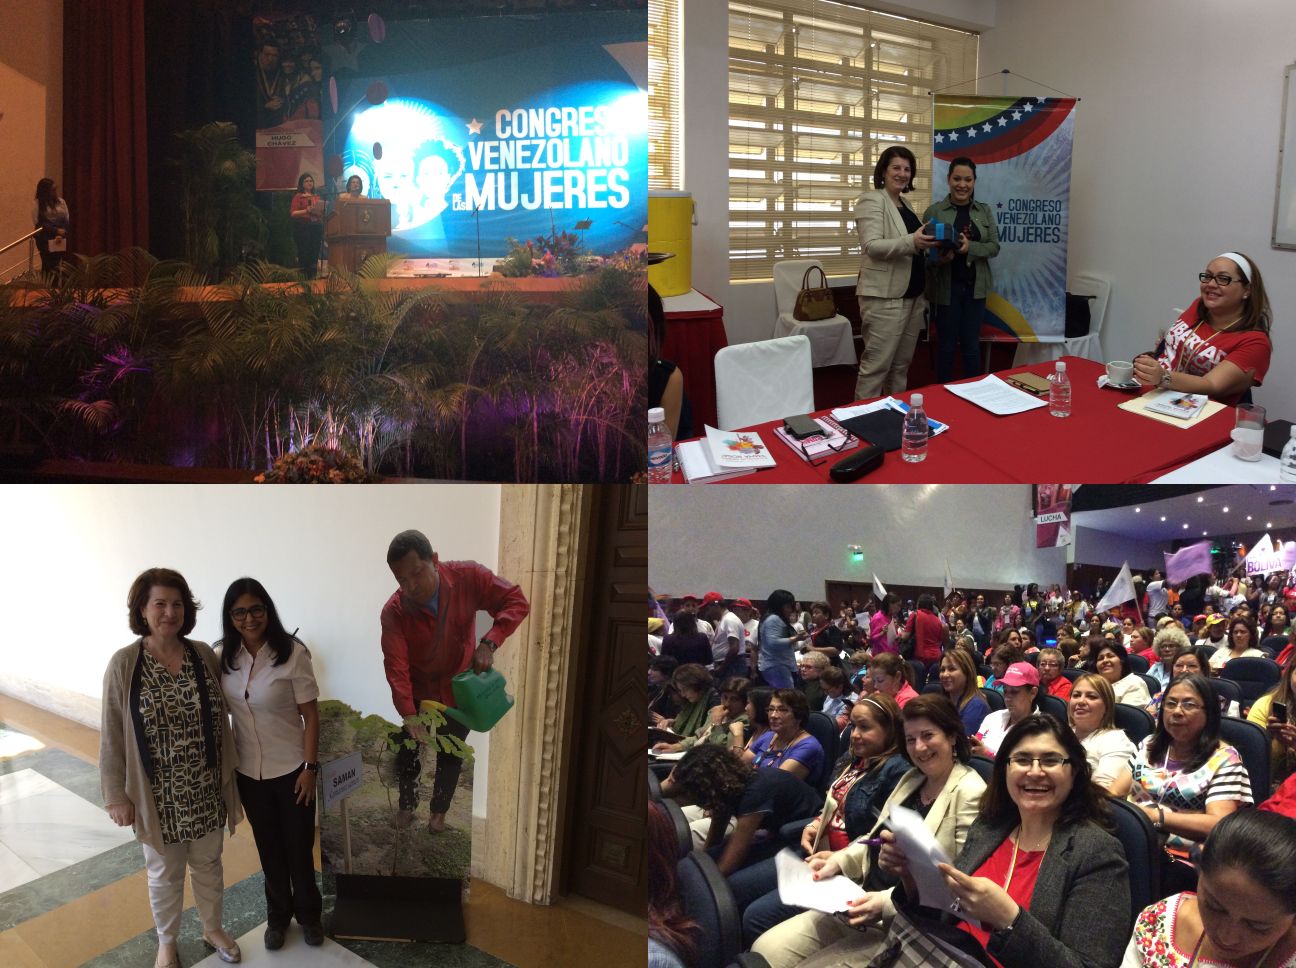 ‘Ενθερμη και ενθουσιώδης υποδοχή της Φωτεινής Κούβελα στο Βενεζουελάνικο Συνέδριο Γυναικών στο Καράκας